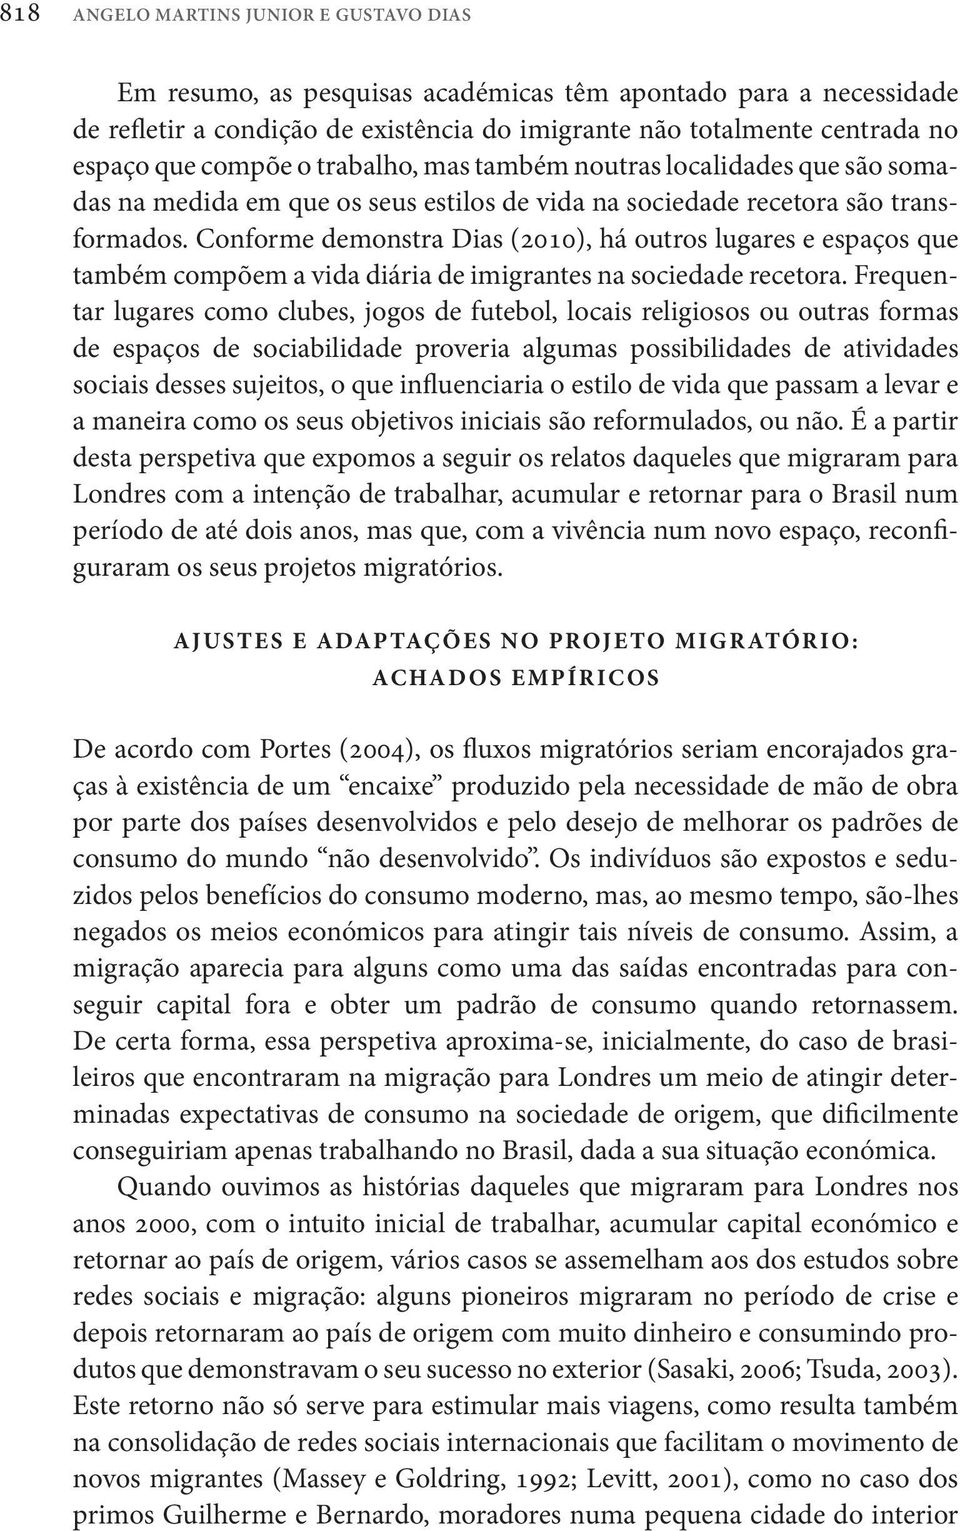 Conforme demonstra Dias (2010), há outros lugares e espaços que também compõem a vida diária de imigrantes na sociedade recetora.